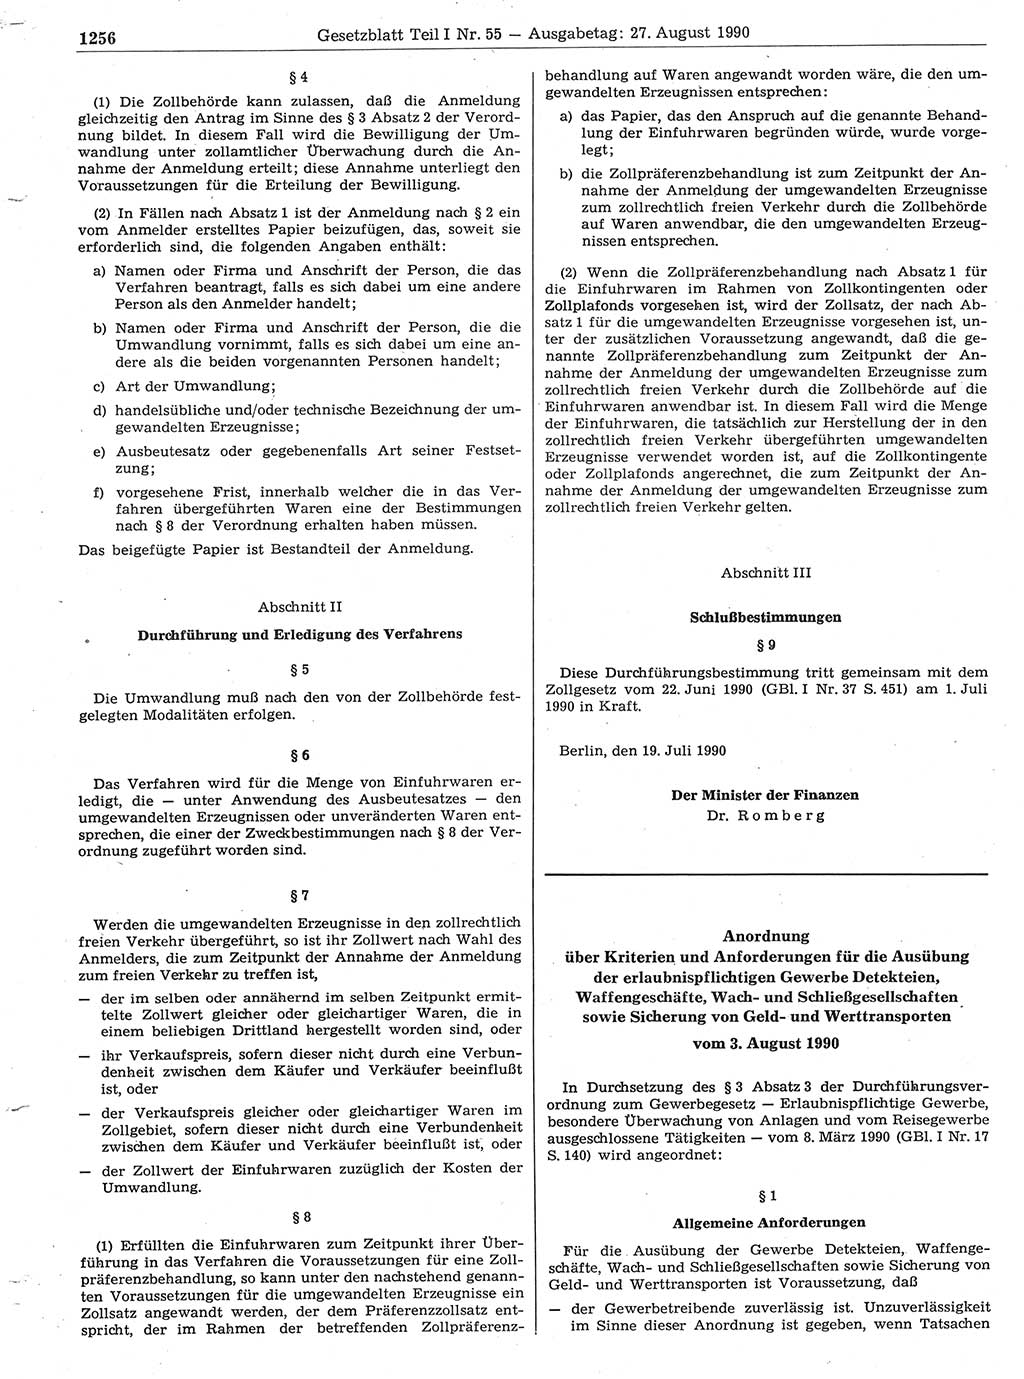 Gesetzblatt (GBl.) der Deutschen Demokratischen Republik (DDR) Teil Ⅰ 1990, Seite 1256 (GBl. DDR Ⅰ 1990, S. 1256)